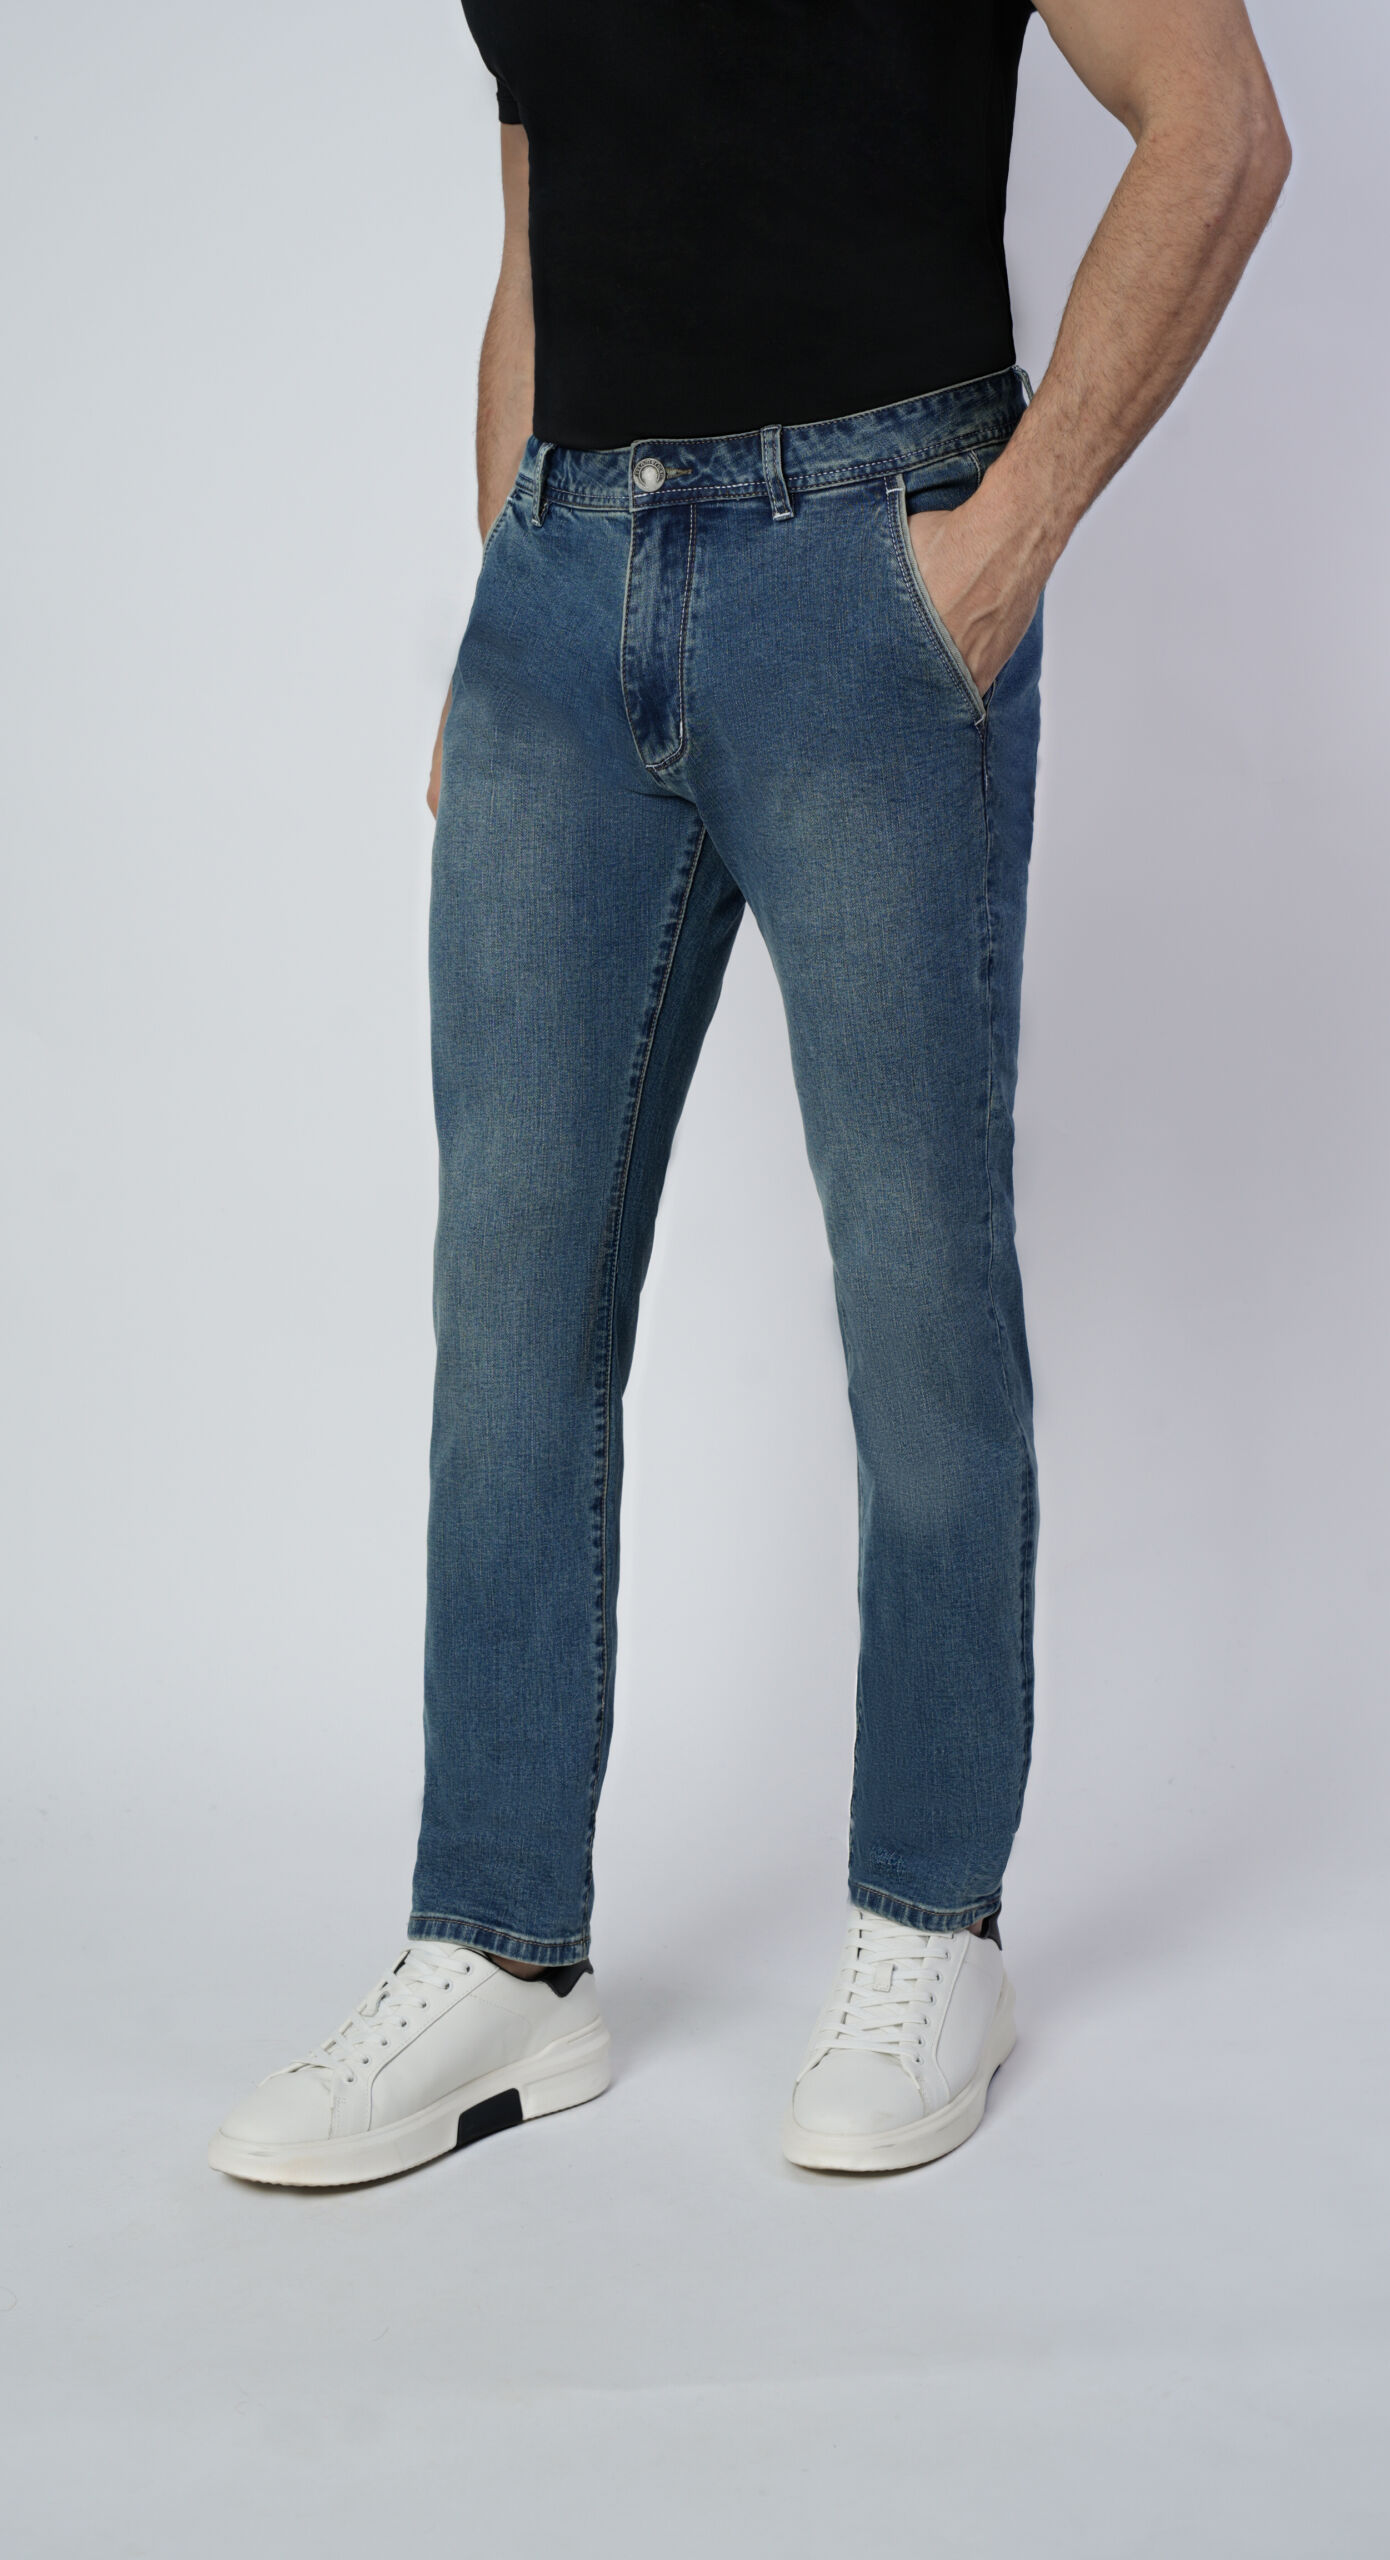 Glow 1 scaled 1st american jeans modello chino uomo colore blu denim - 99% cotton 1% elastan denim 10oz